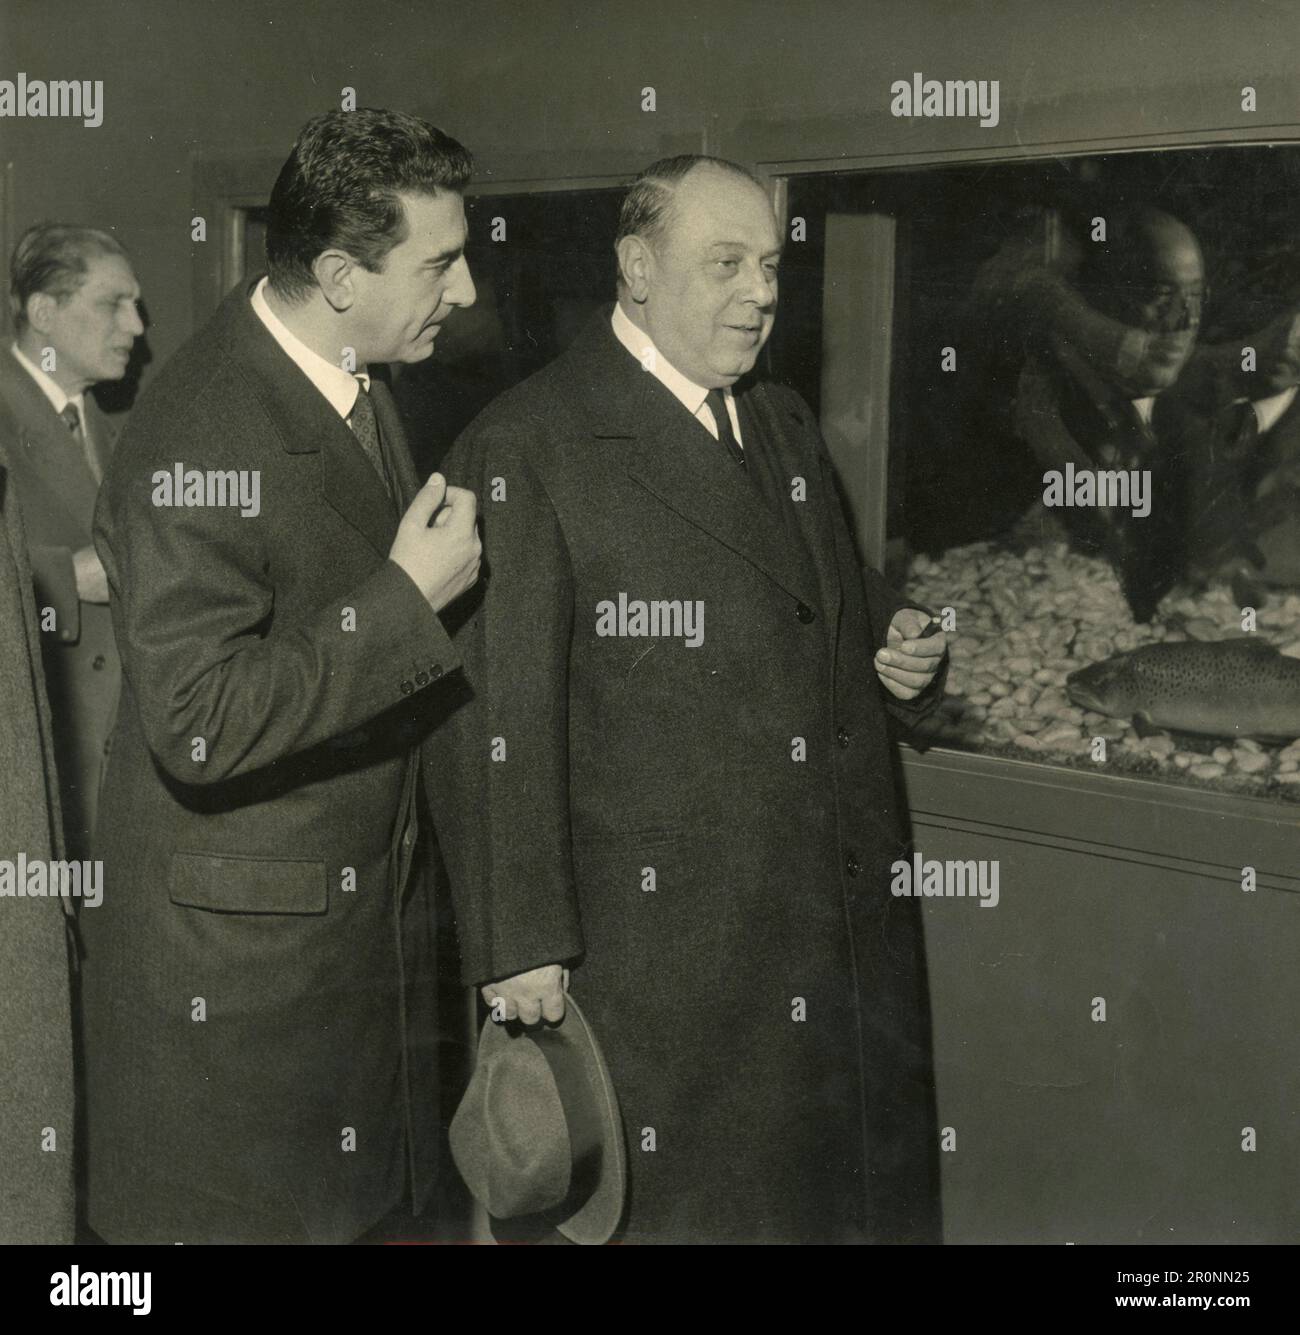 Luigi Meda, maire adjoint de Milan, et Gianfranco Crespi, conseiller touristique, lors de la cérémonie d'ouverture de l'Aquarium restauré de Milan, Italie 1963 Banque D'Images